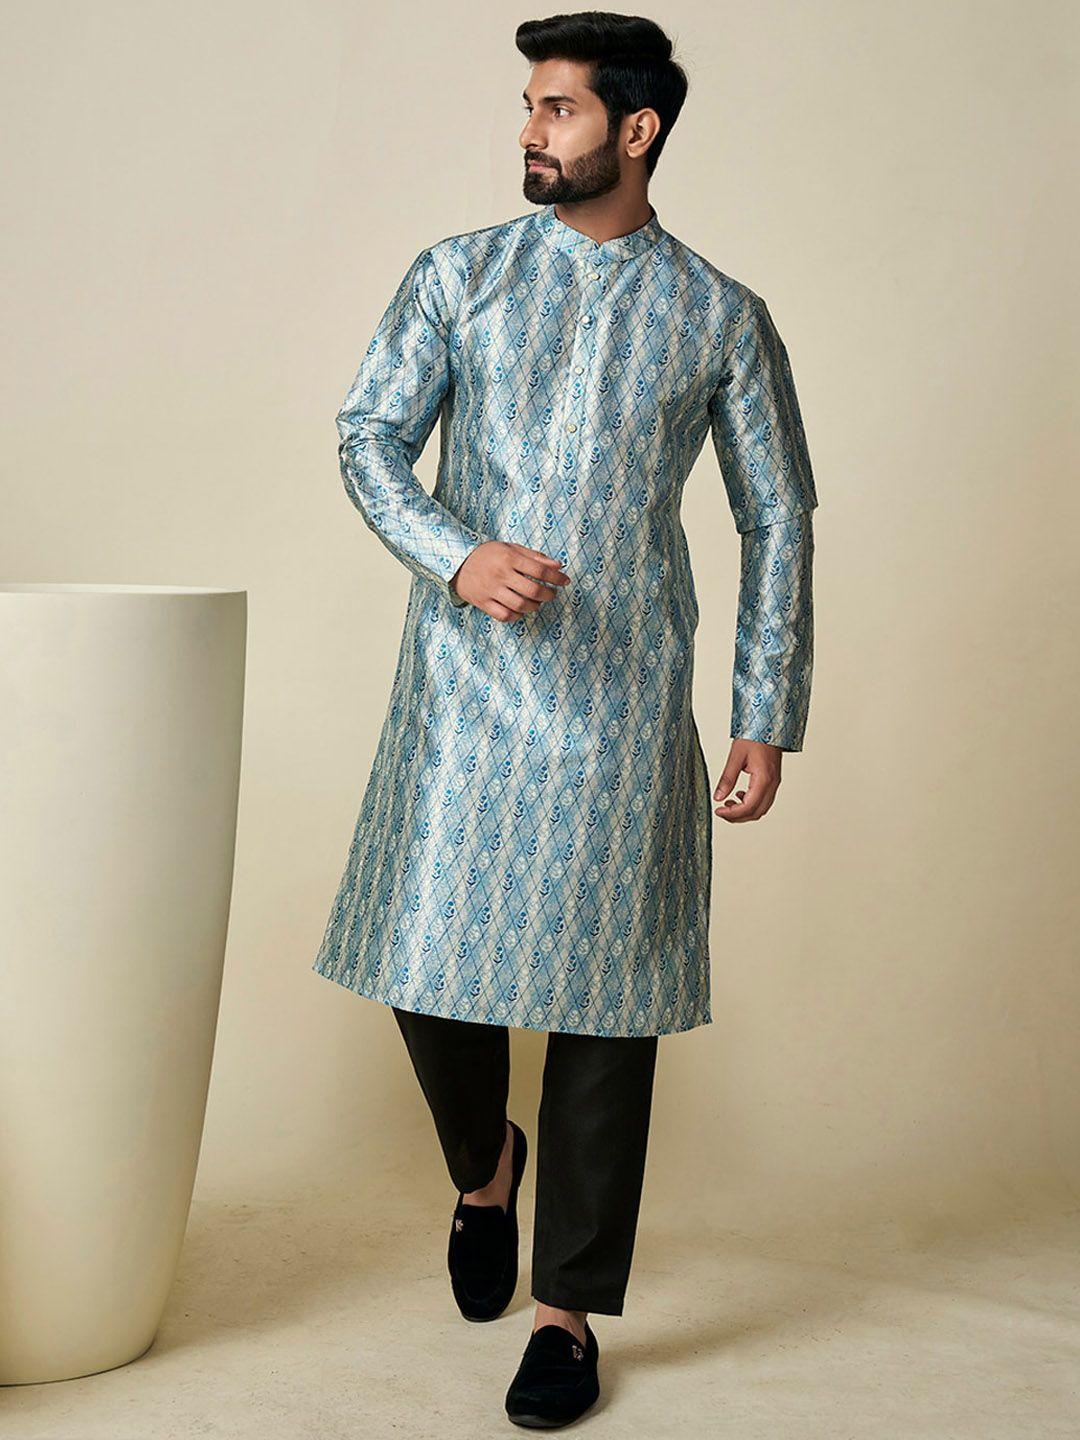 inddus ethnic motifs woven design mandarin collar regular kurta